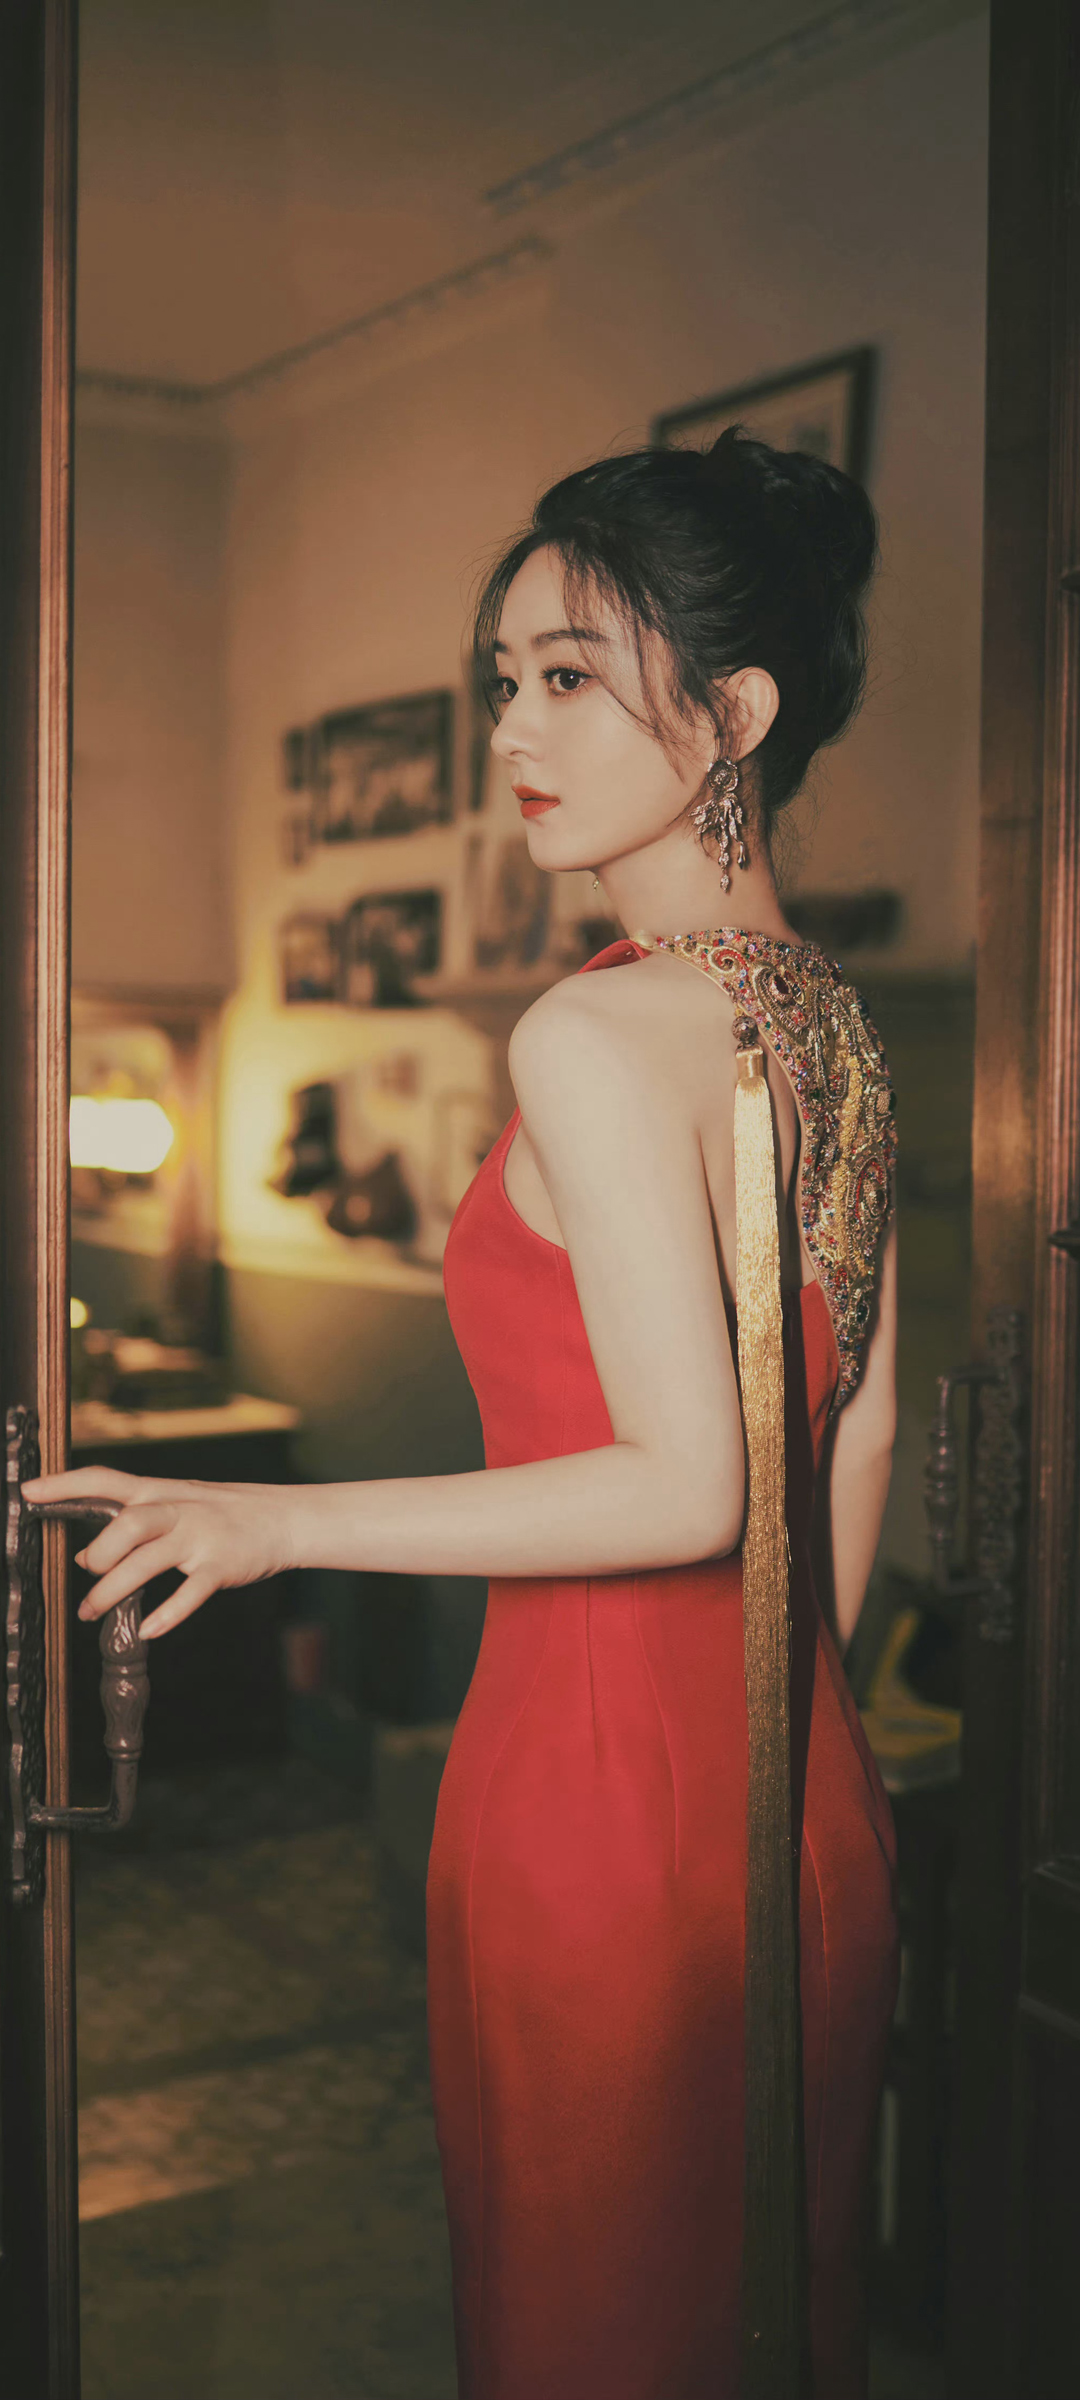 好漂亮的红裙子